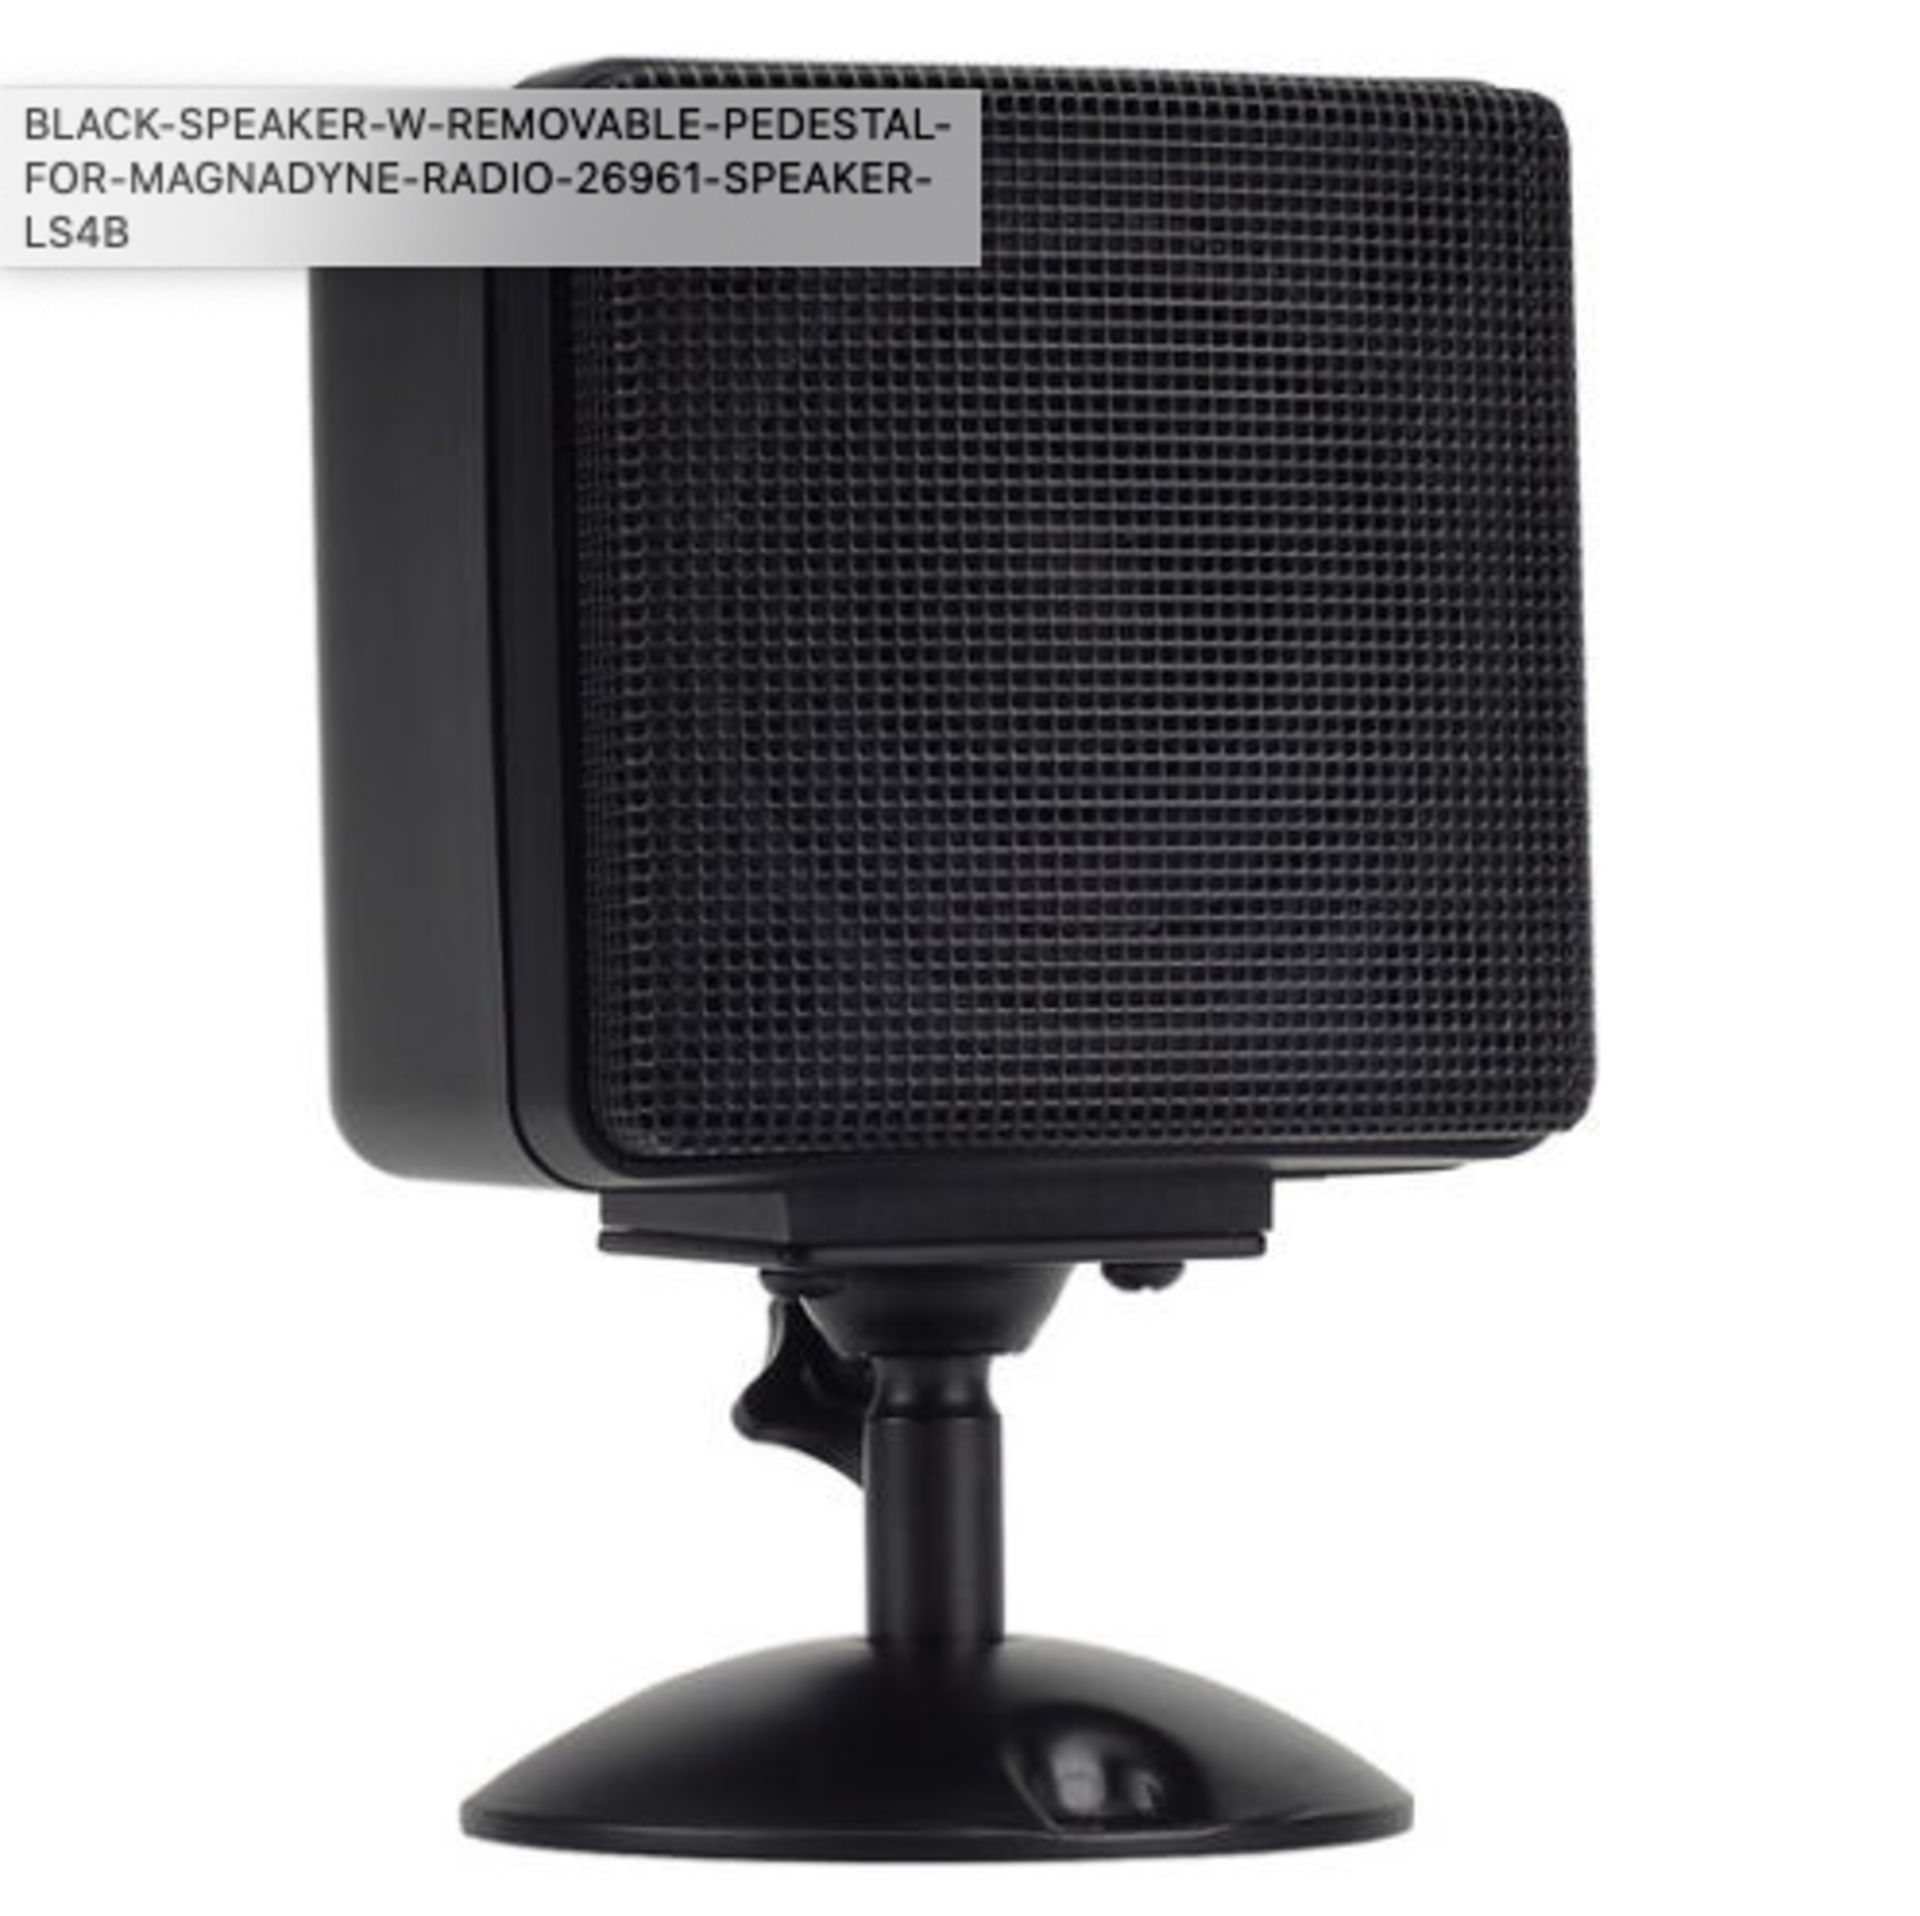 8 SINGLE SPEAKER BLACK SPEAKER W/ REMOVABLE PEDESTAL MODEL 26961 3" Satellite Speaker (Black) - Image 4 of 4